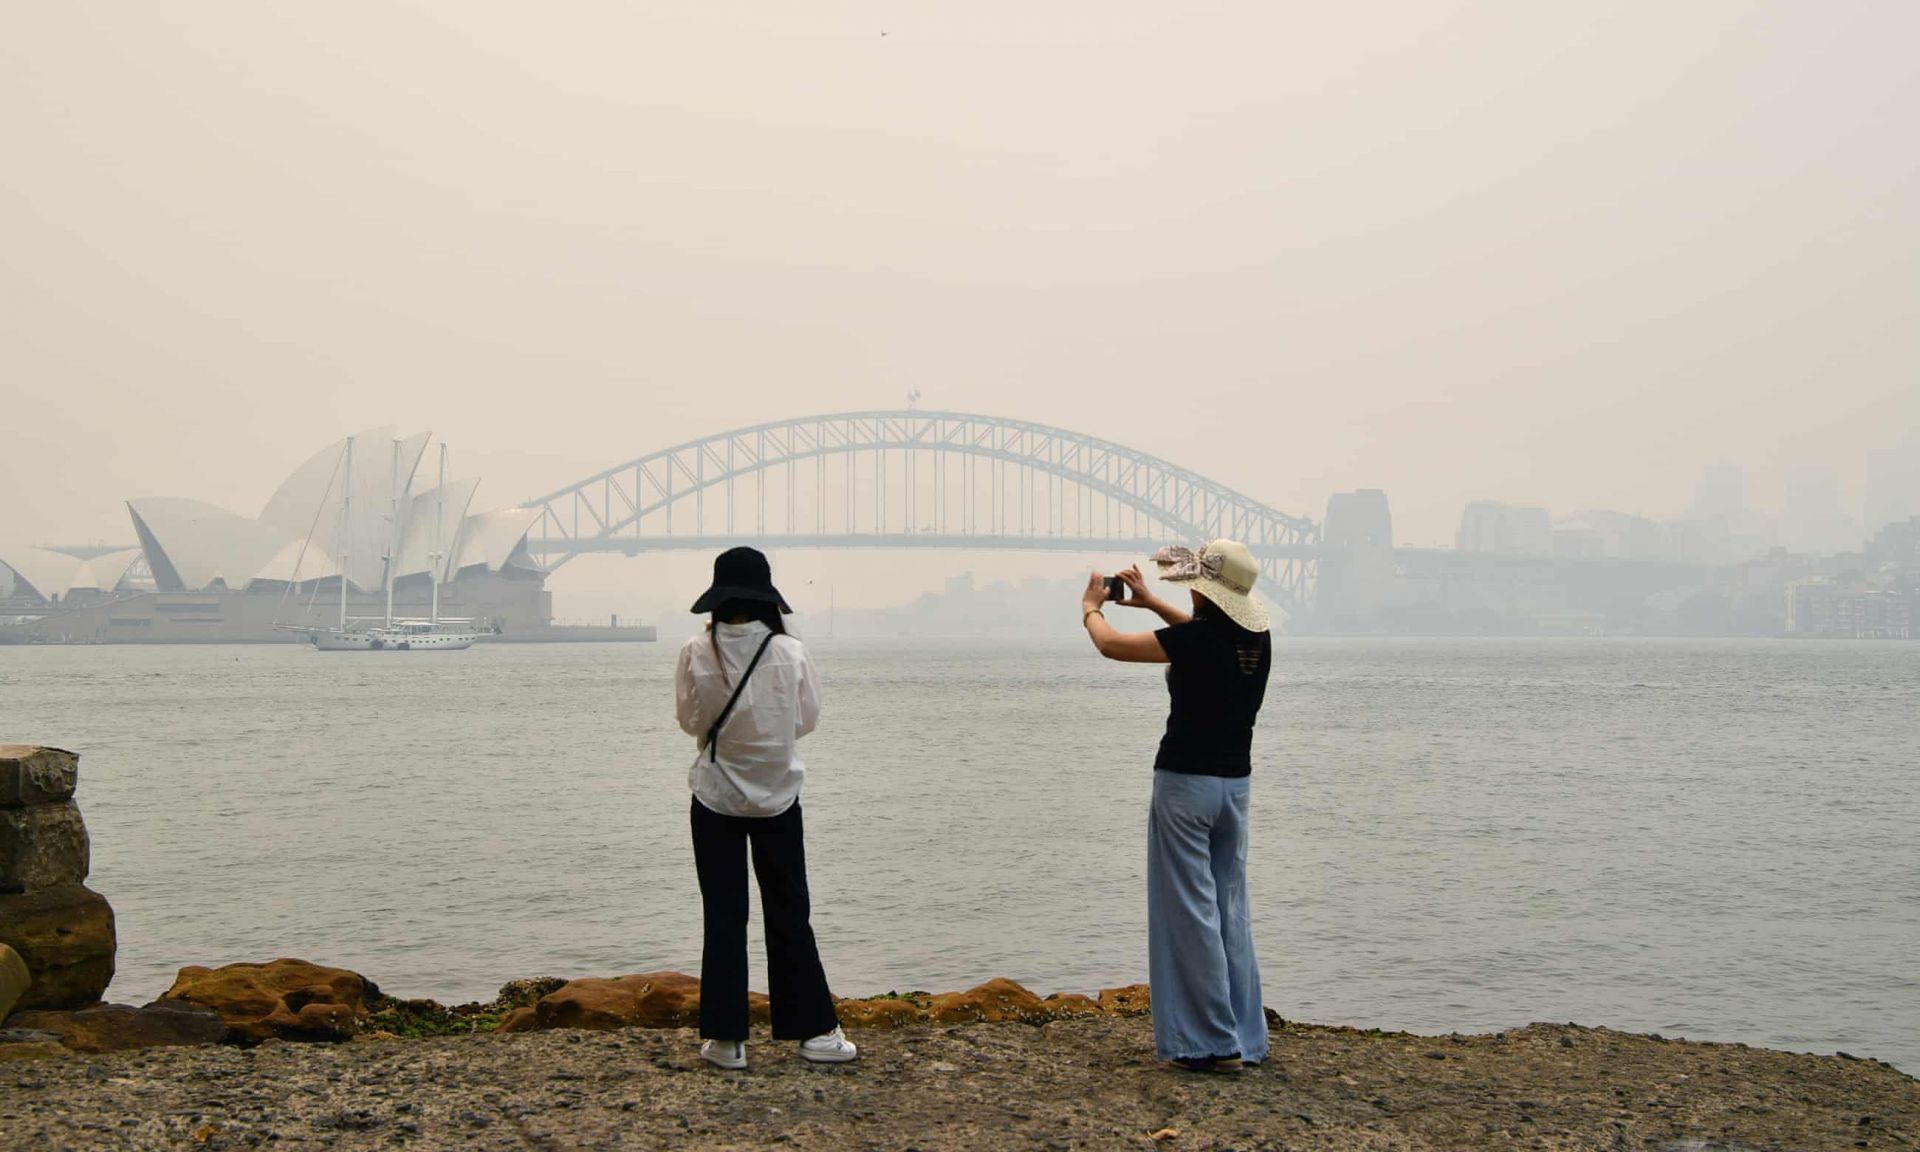 Thành phố Sydney của Australia cũng được xếp hạng thứ 4 trong danh sách những thành phố ô nhiễm không khí nhiều nhất trên thế giới